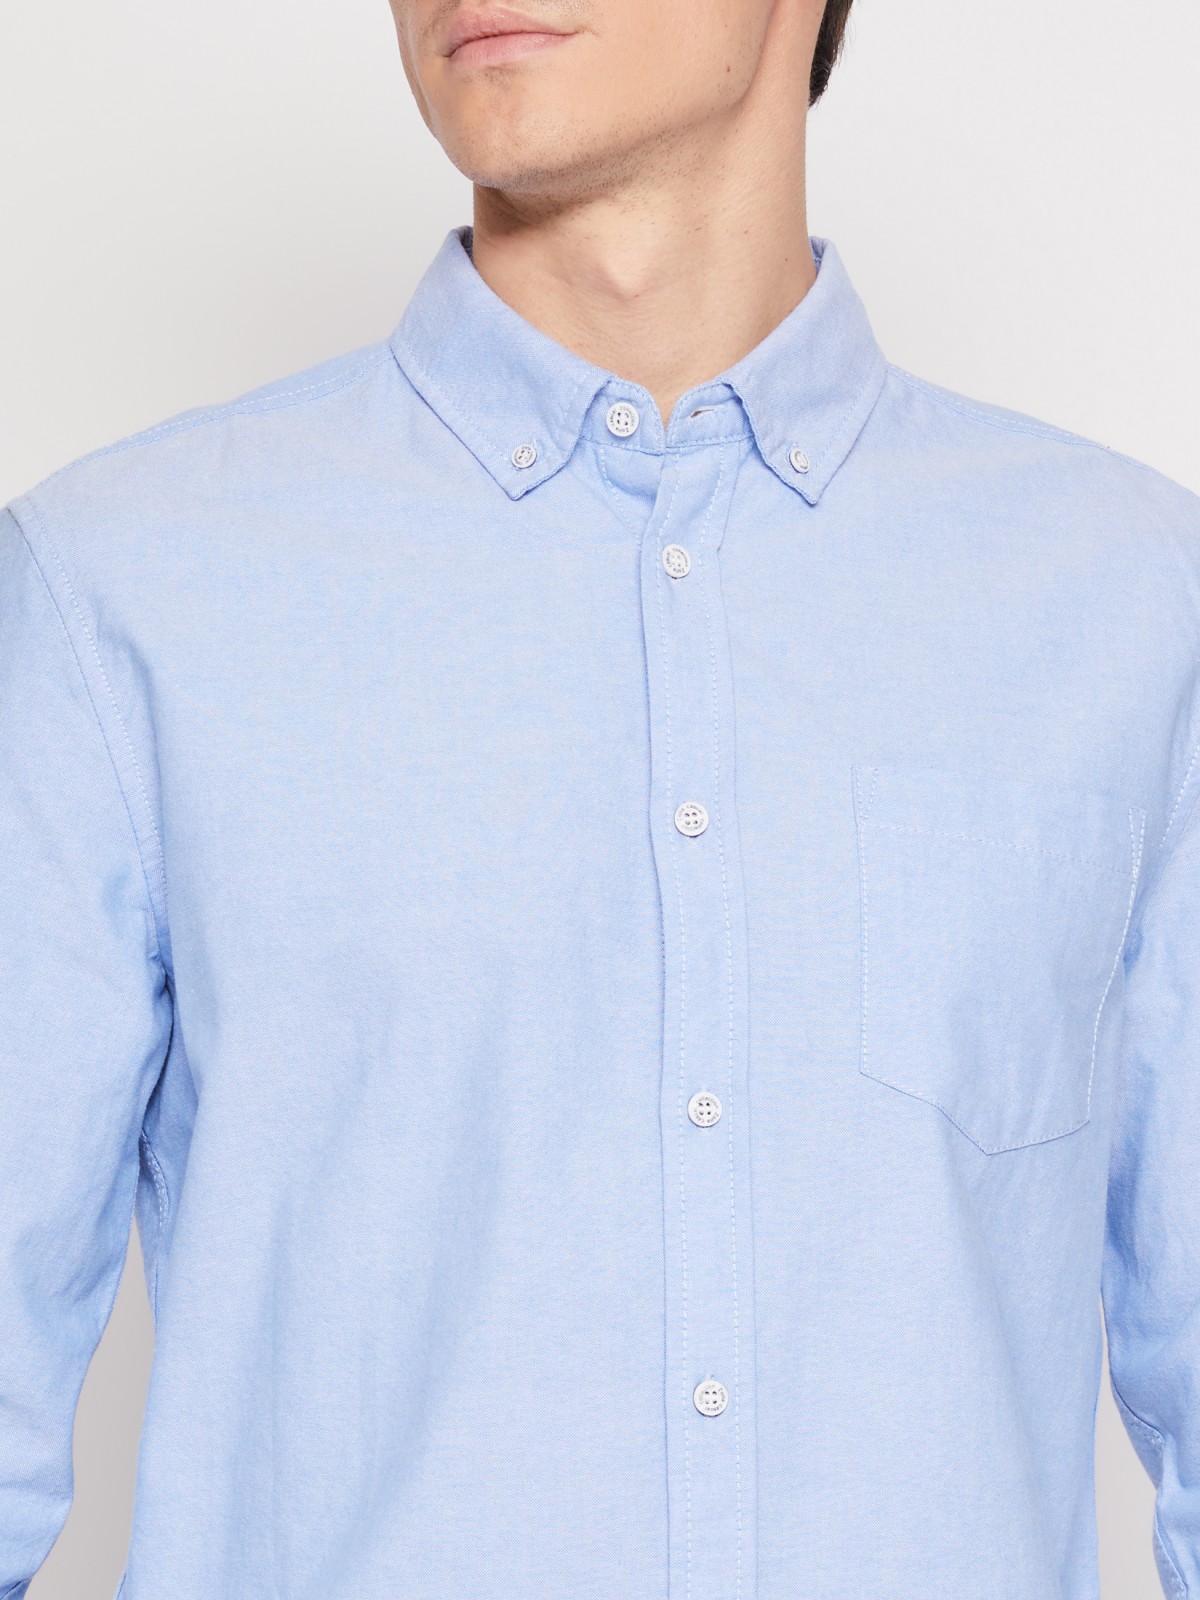 Хлопковая рубашка с длинным рукавом zolla 012122191013, цвет светло-голубой, размер M - фото 3